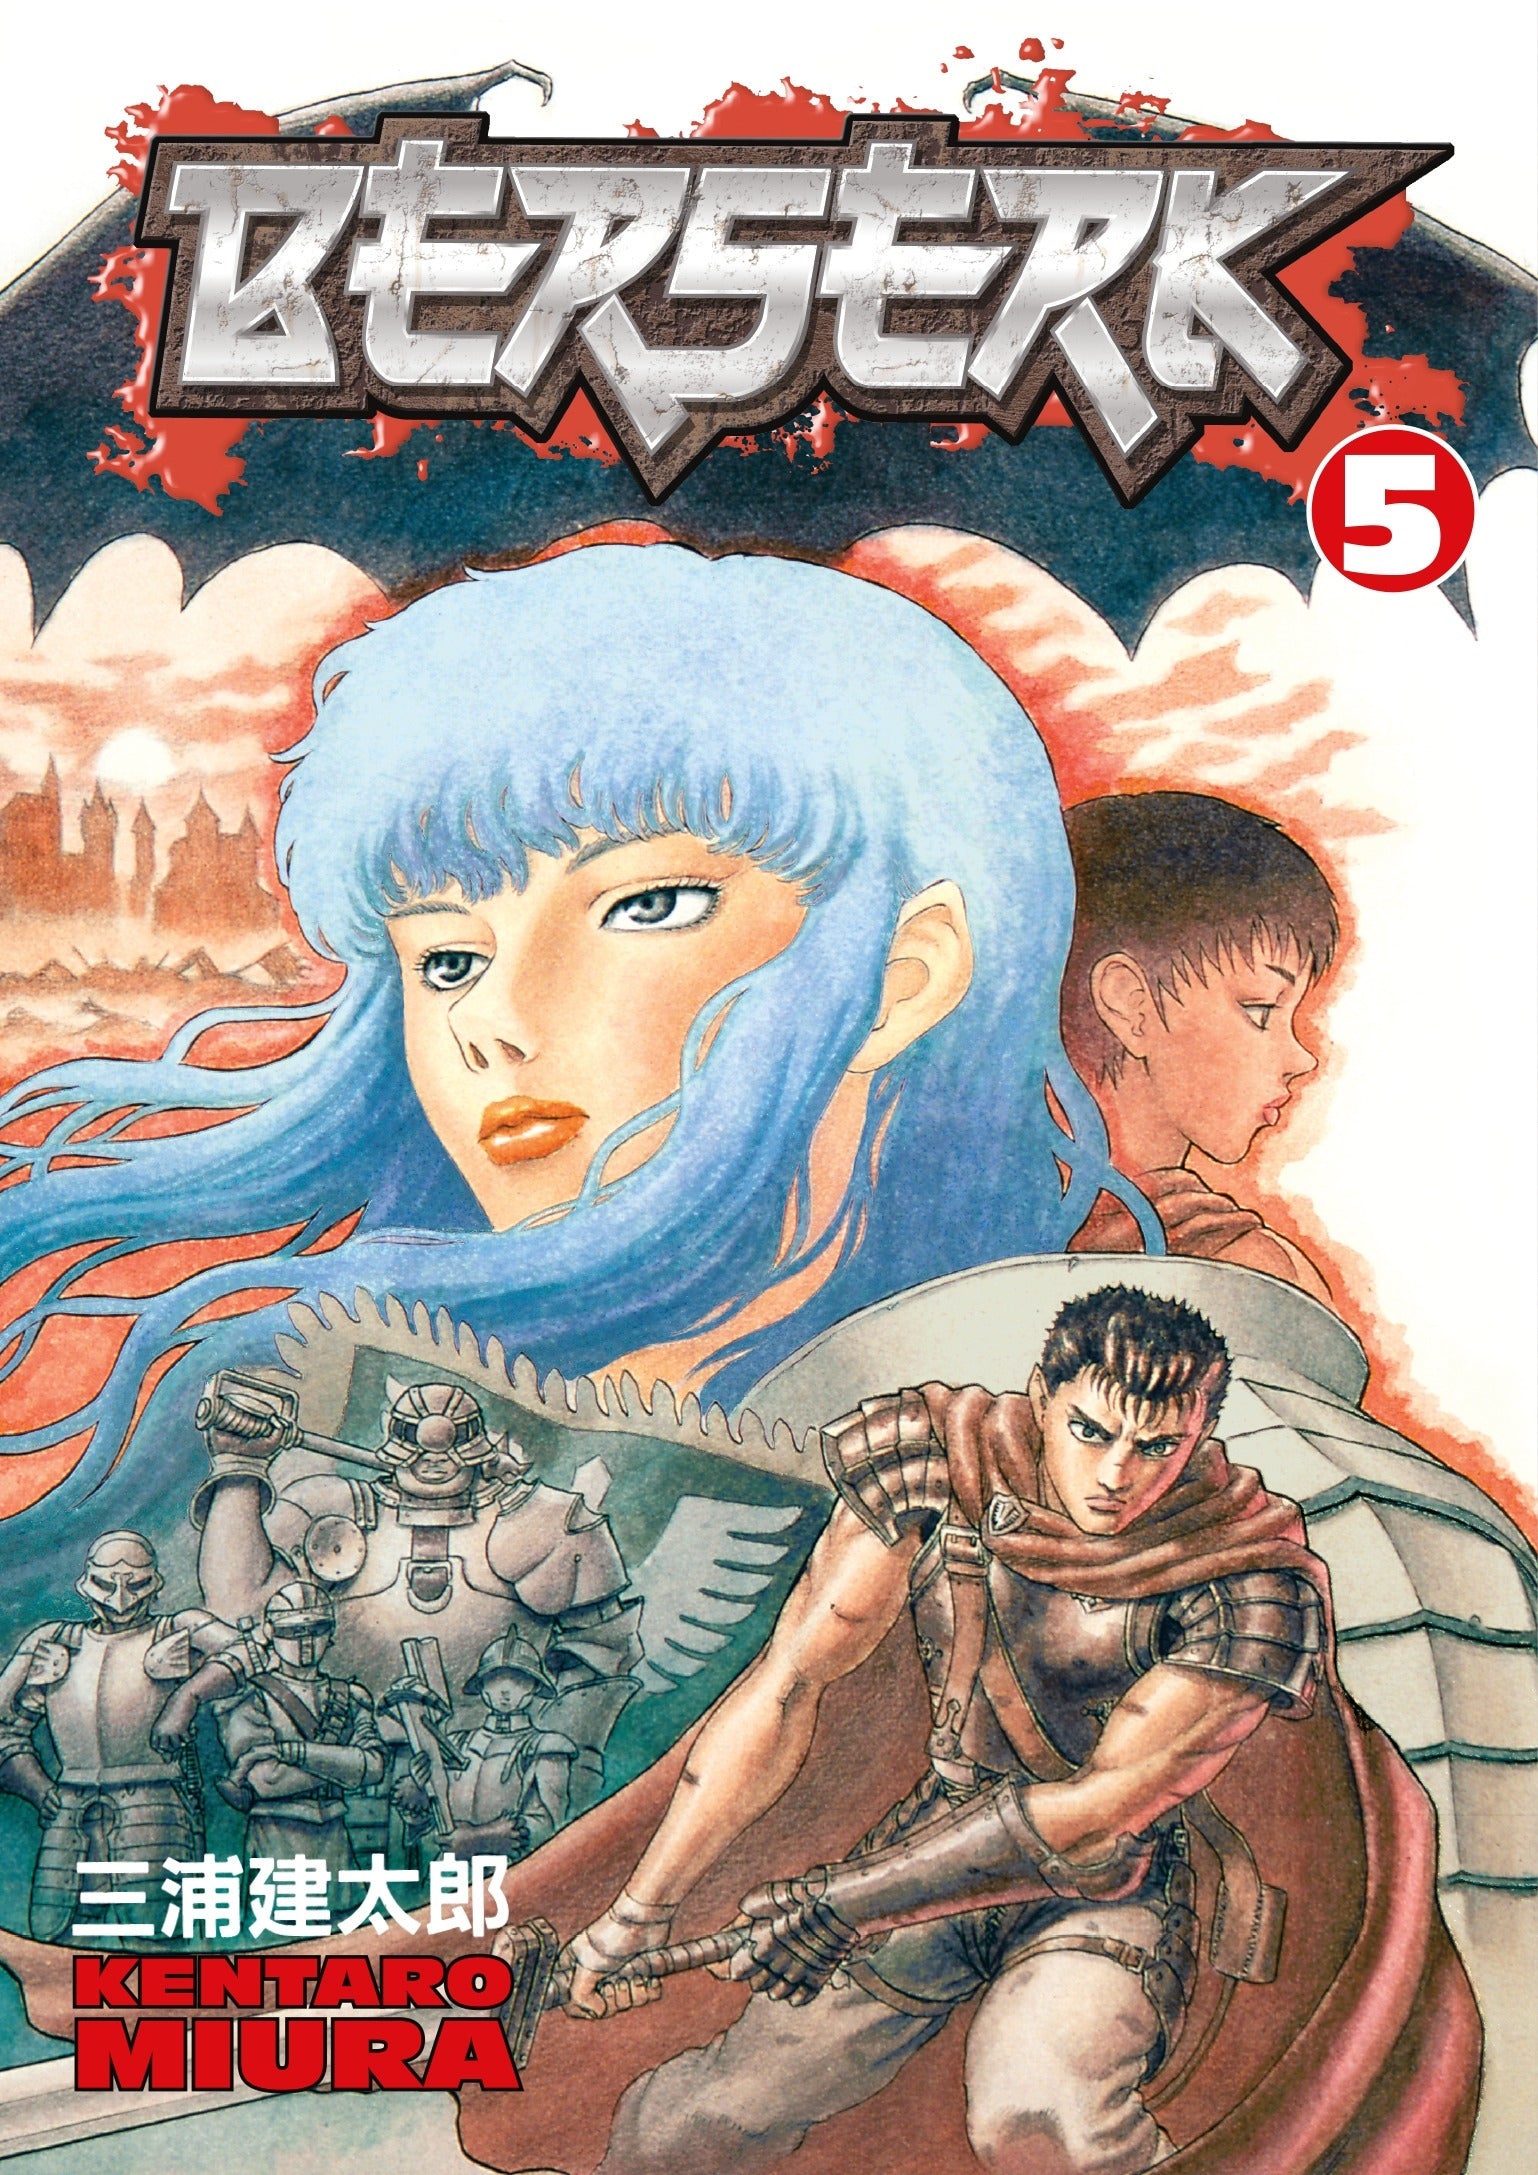 Berserk Vol. 5 (Manga)